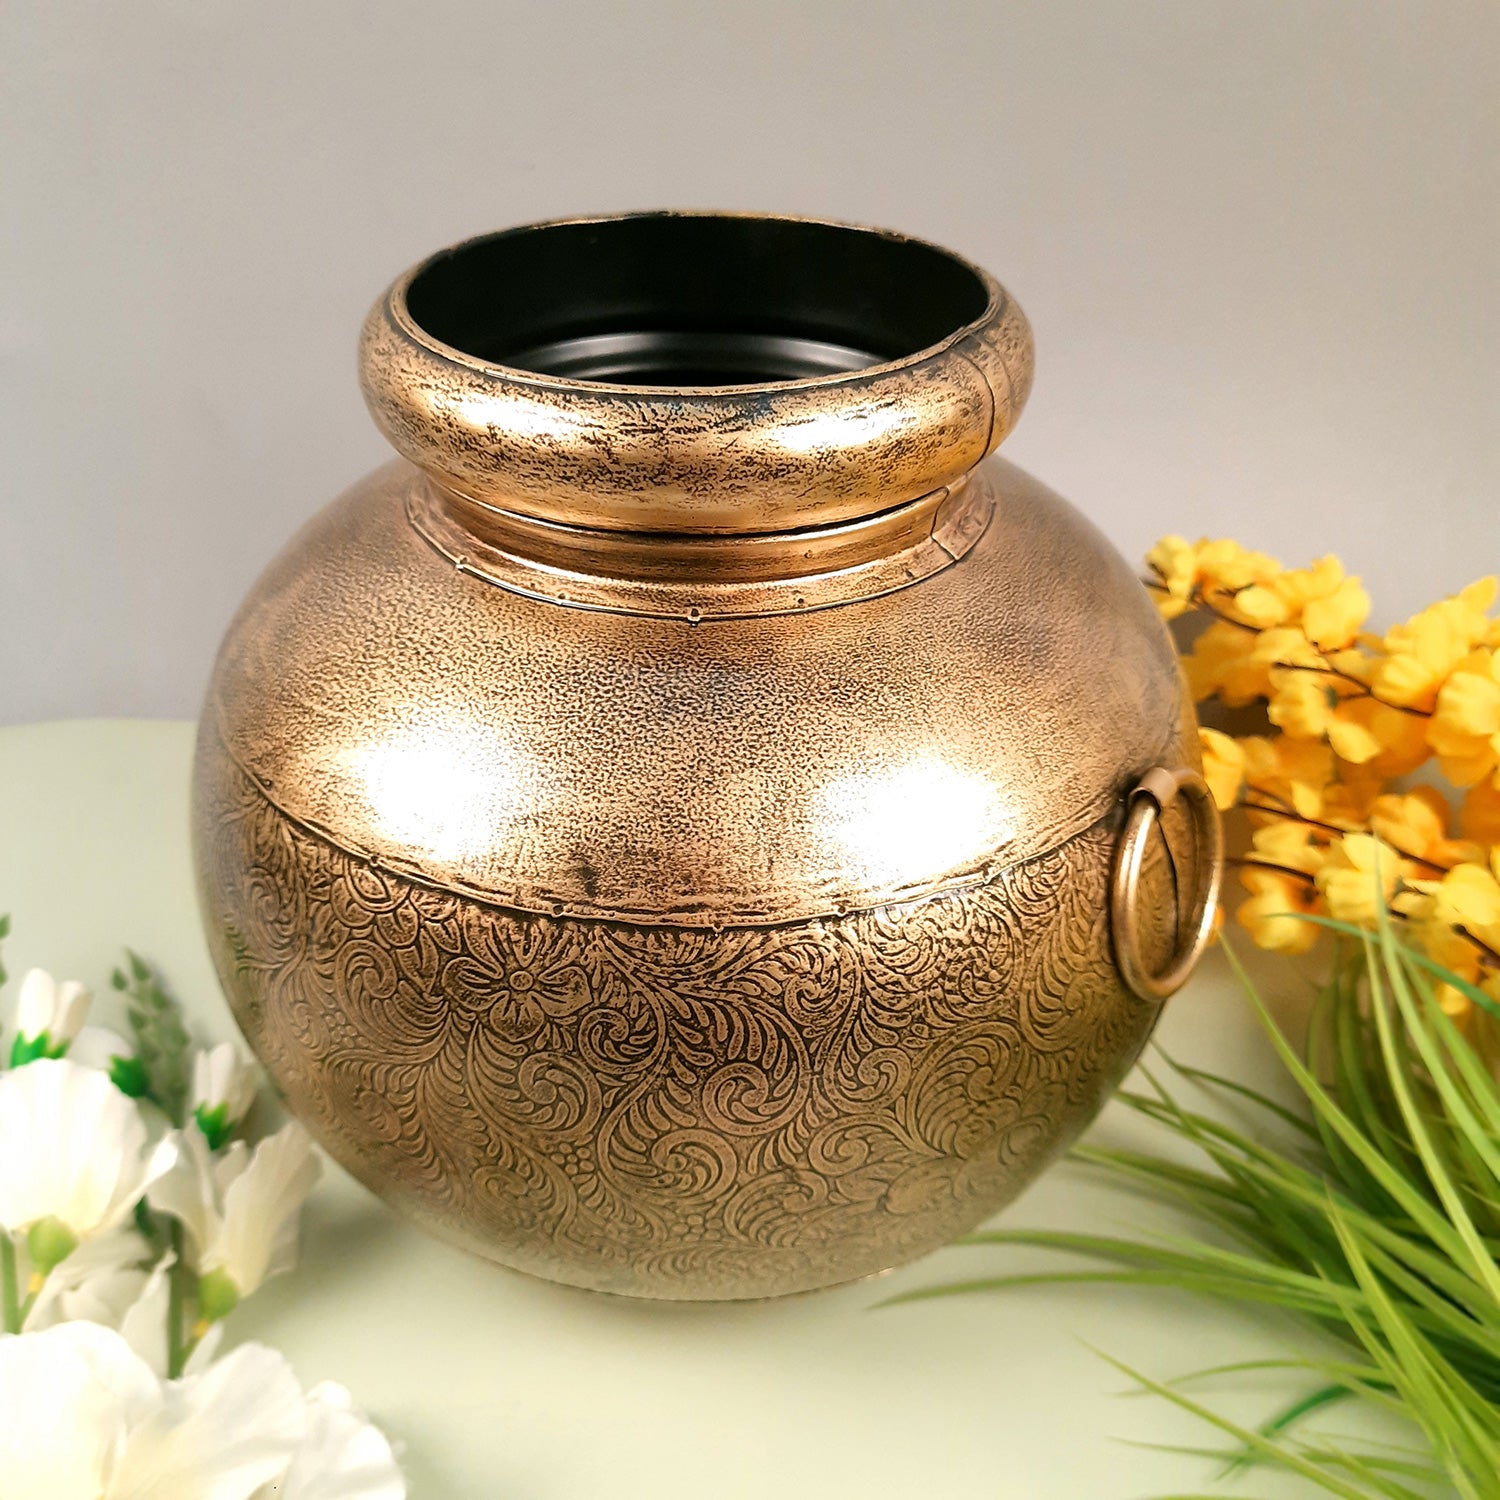 Flower Vase - Pitcher Design | Pots for Flowers - For Tabletop, Living Room, Home & Office Decor | Corner Decoration | Vases for Gifts - 12 Inch - Apkamart